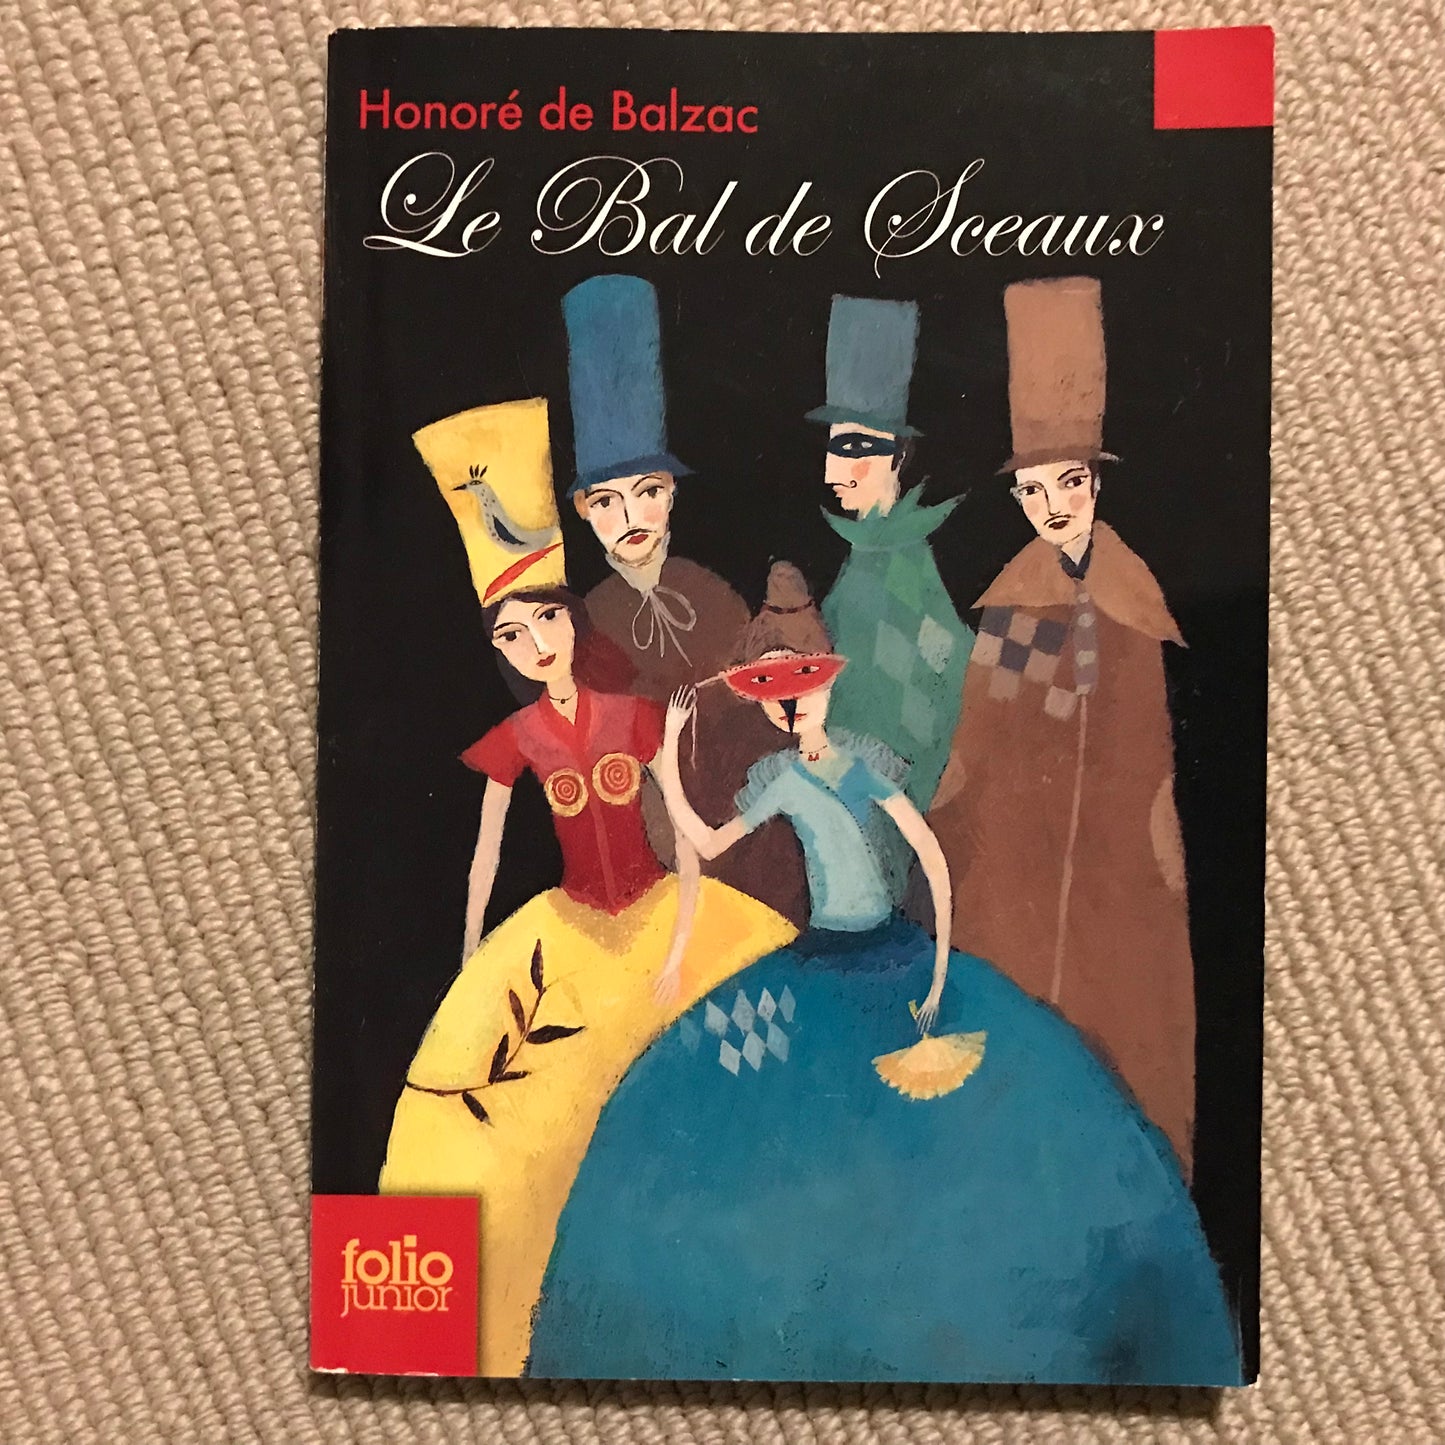 Balzac de, Honoré - Le bal de Sceaux